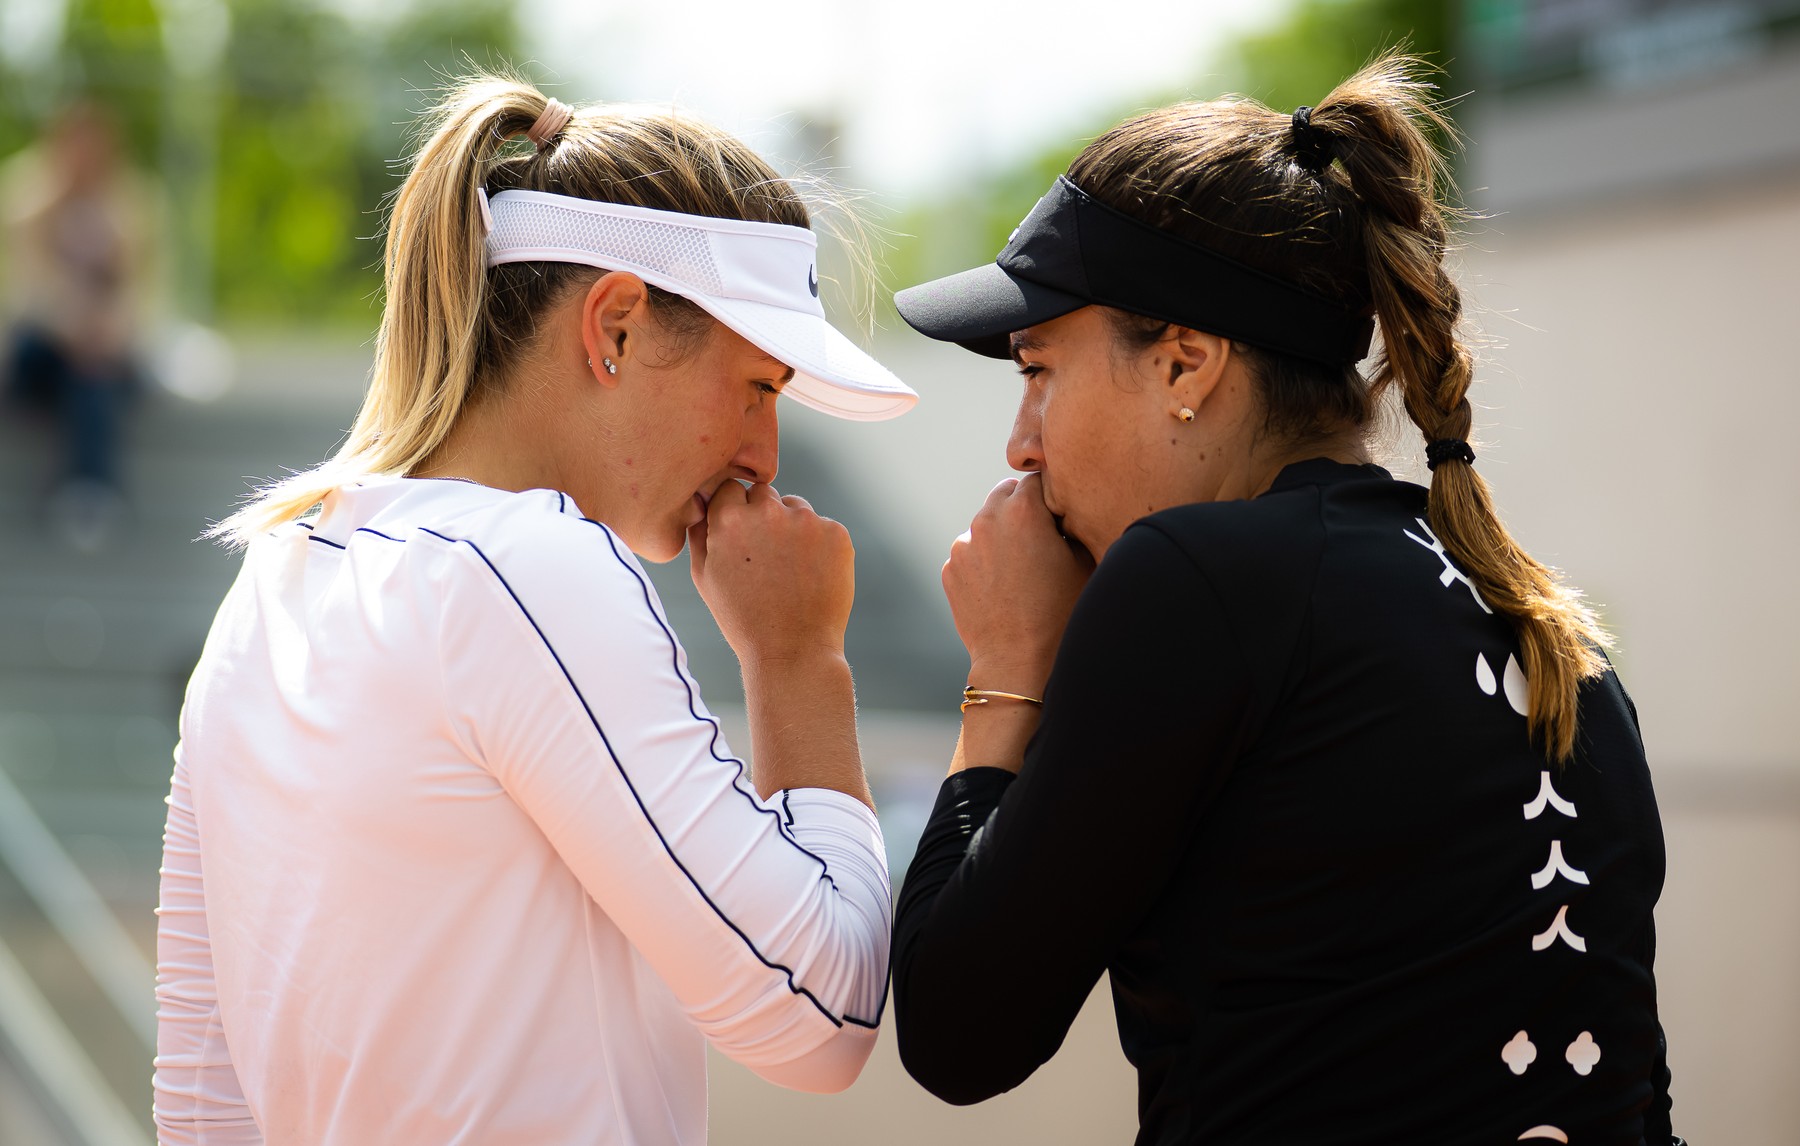 Gabriela Ruse, enervată de atitudinea Martei Kostyuk la Roland Garros. “M-a certat, apoi a început să plângă”